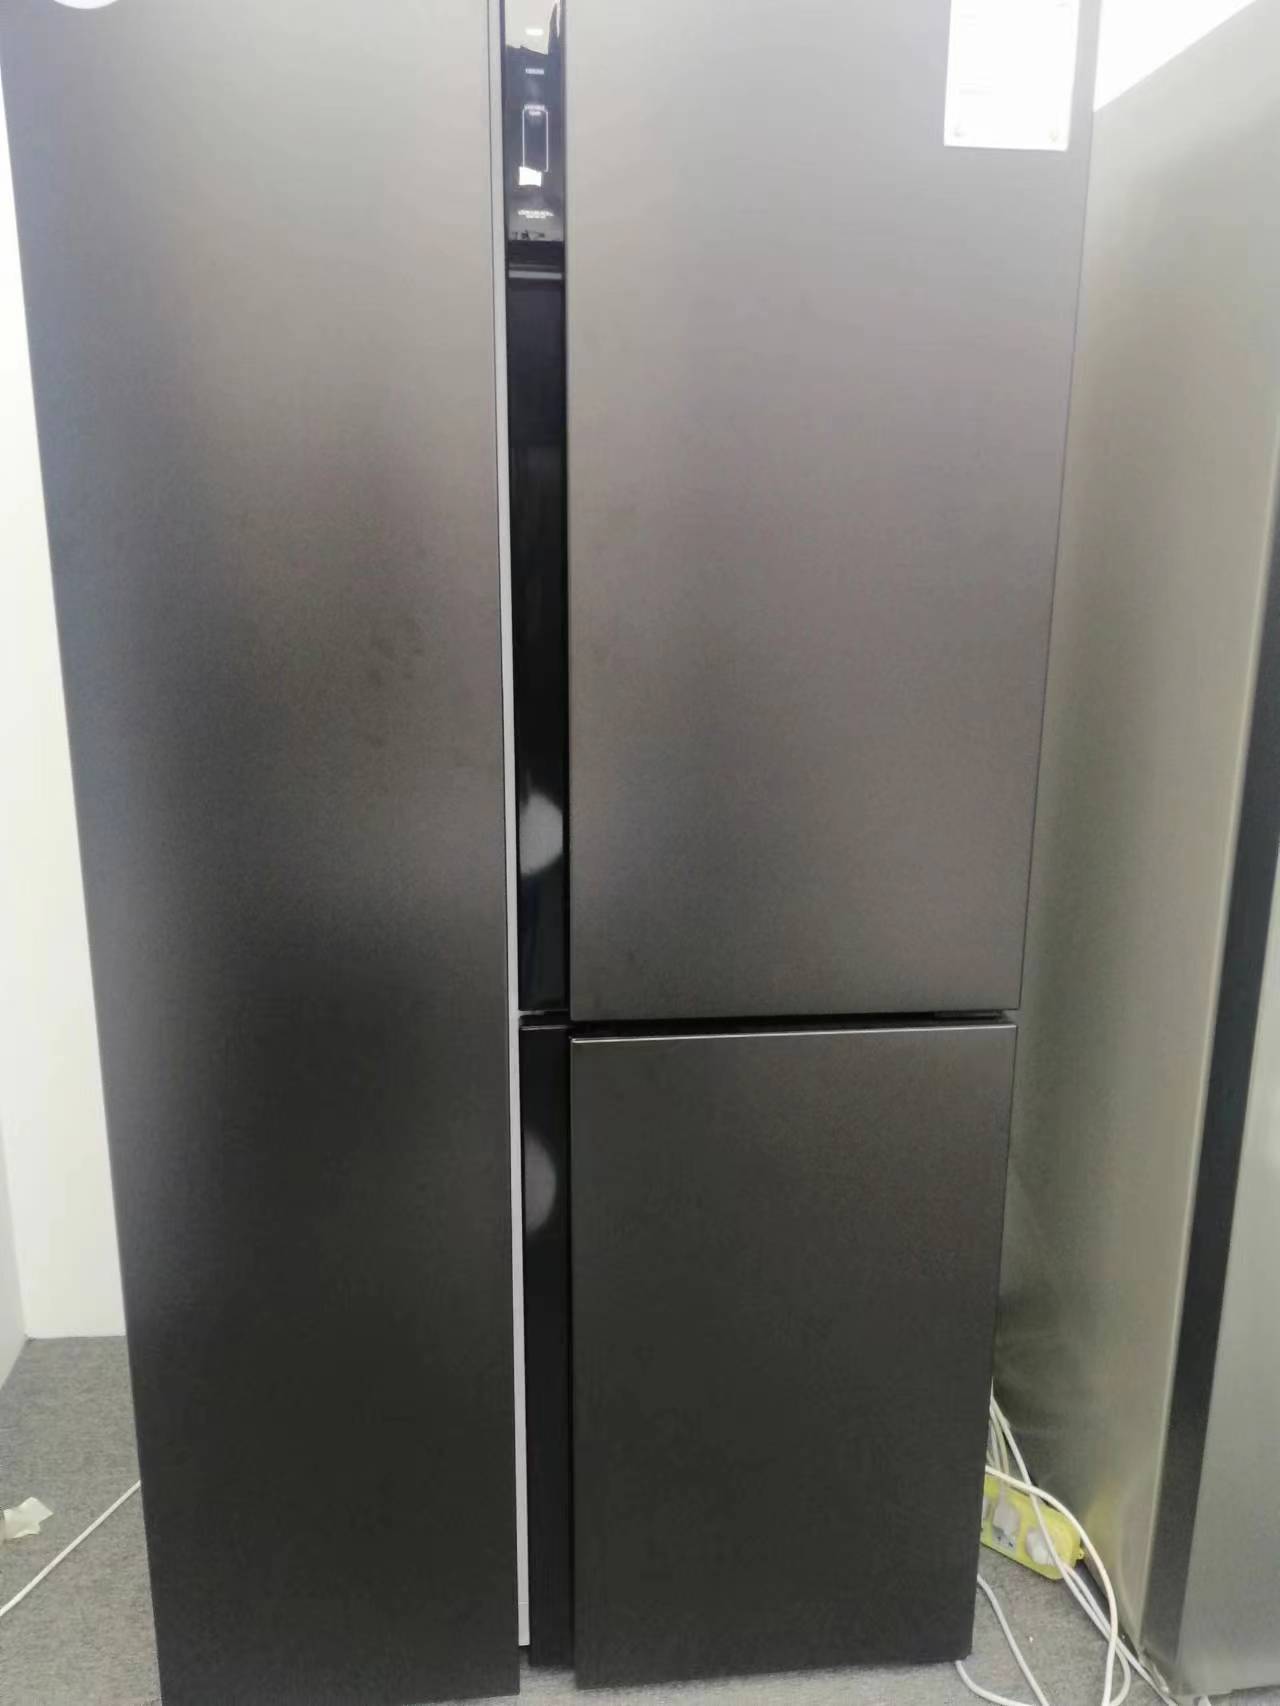 T door refrigerator model number BCD-500W